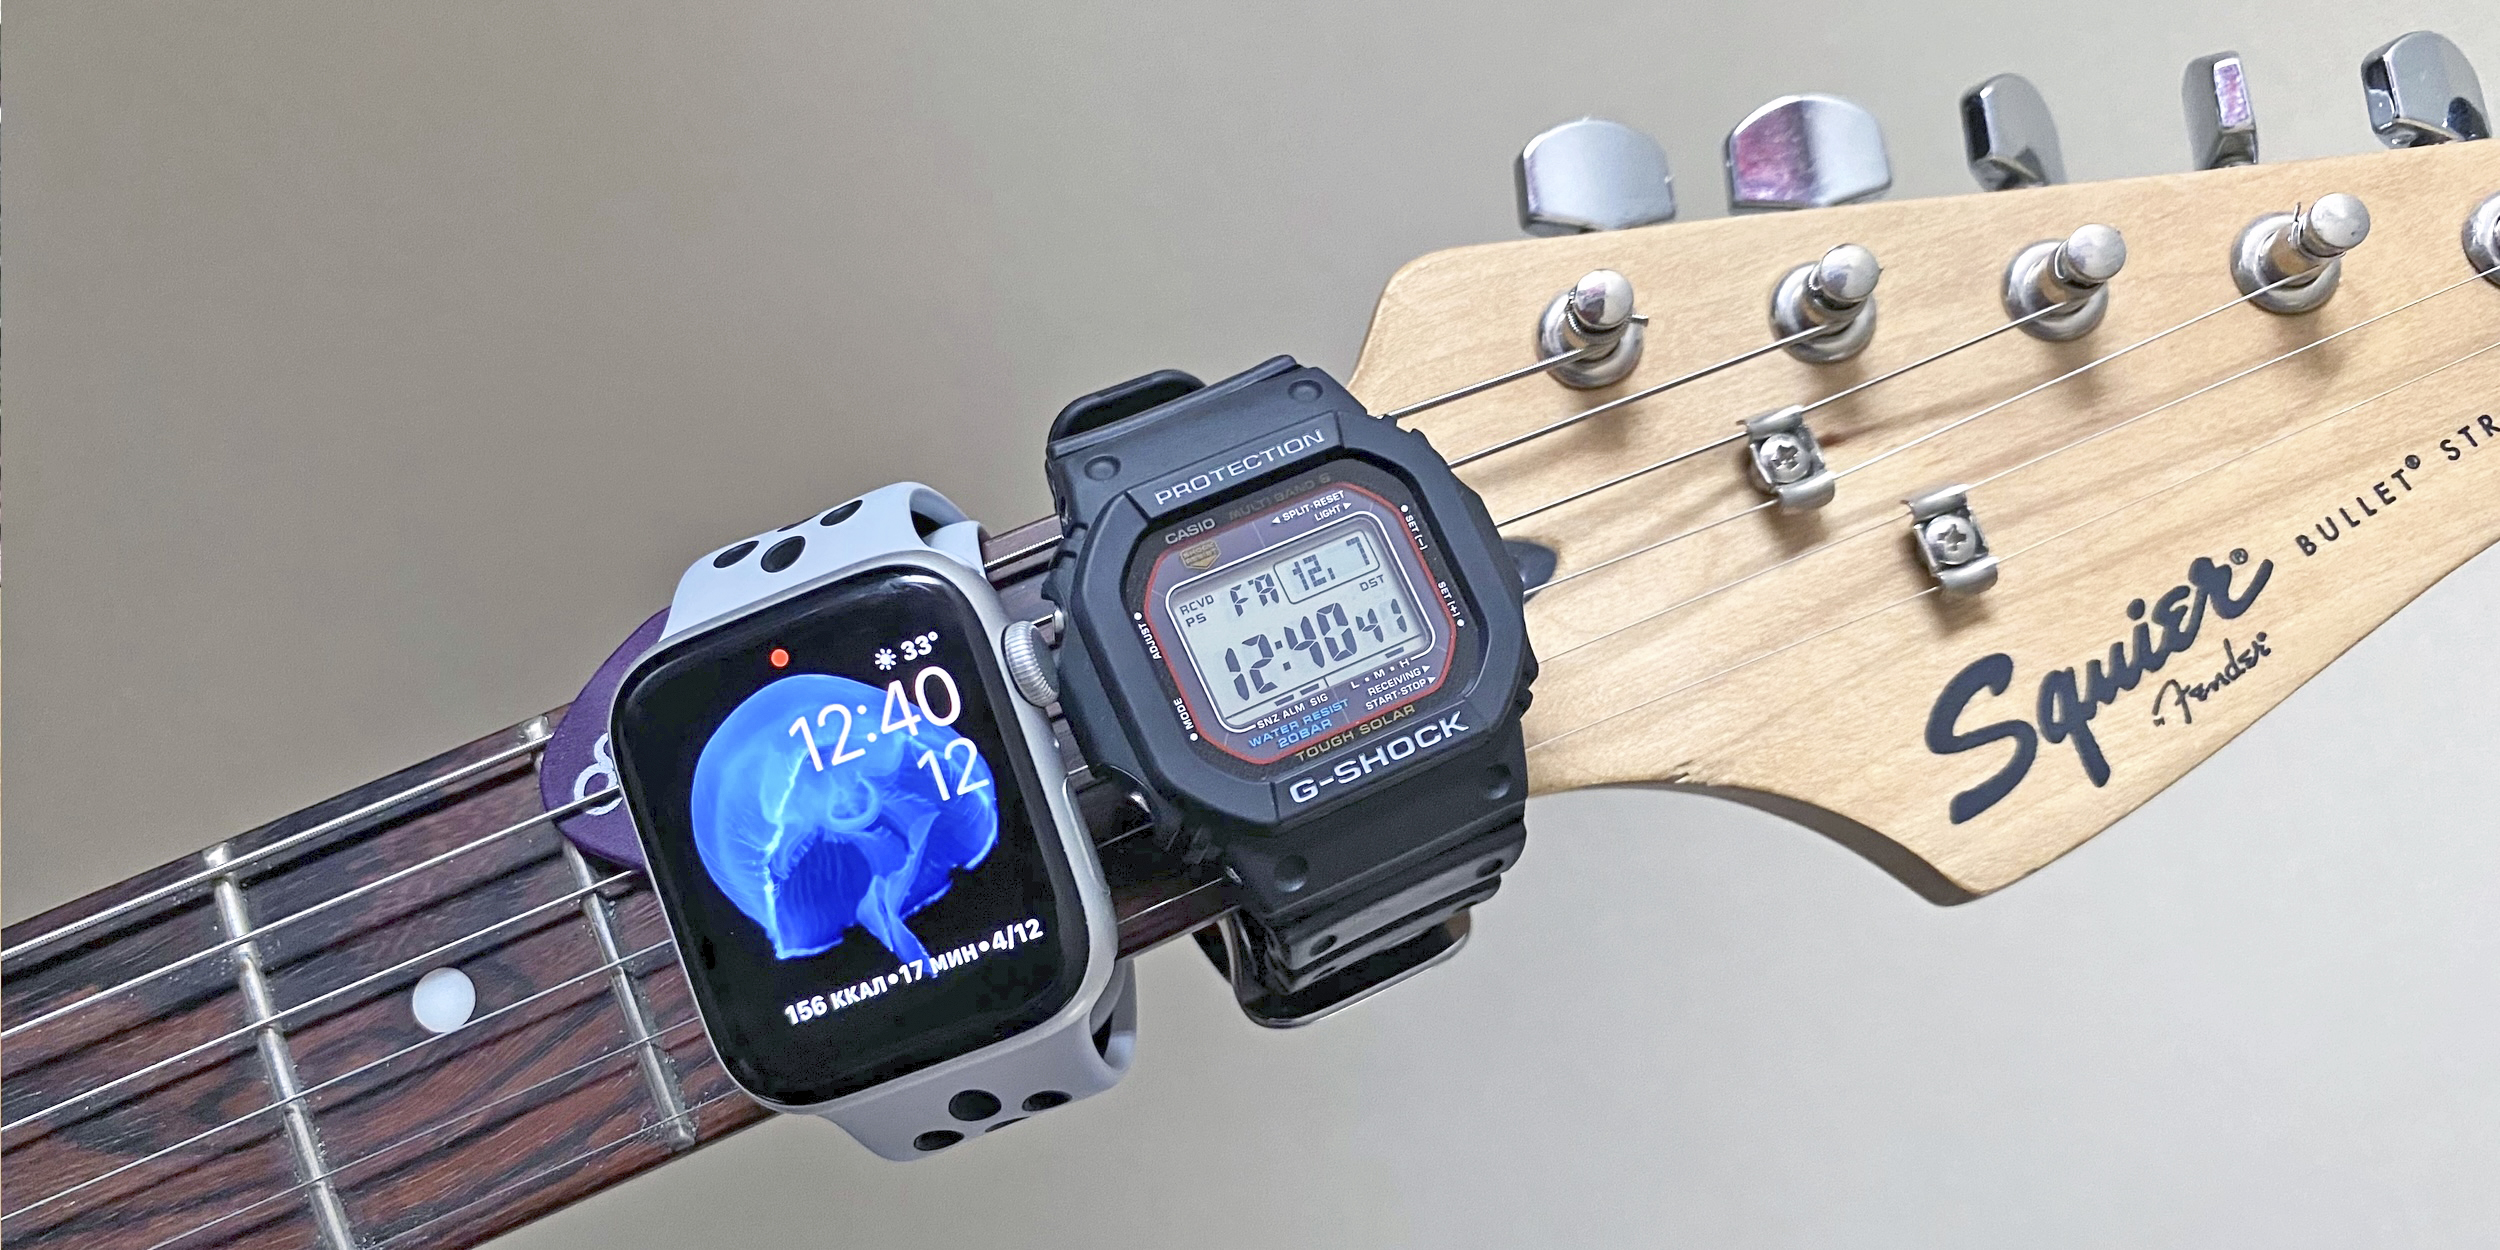 Обычные и умные часы: Apple Watch S постоянно шлют уведомления, а Casio G-Shock M5610 дают сосредоточиться